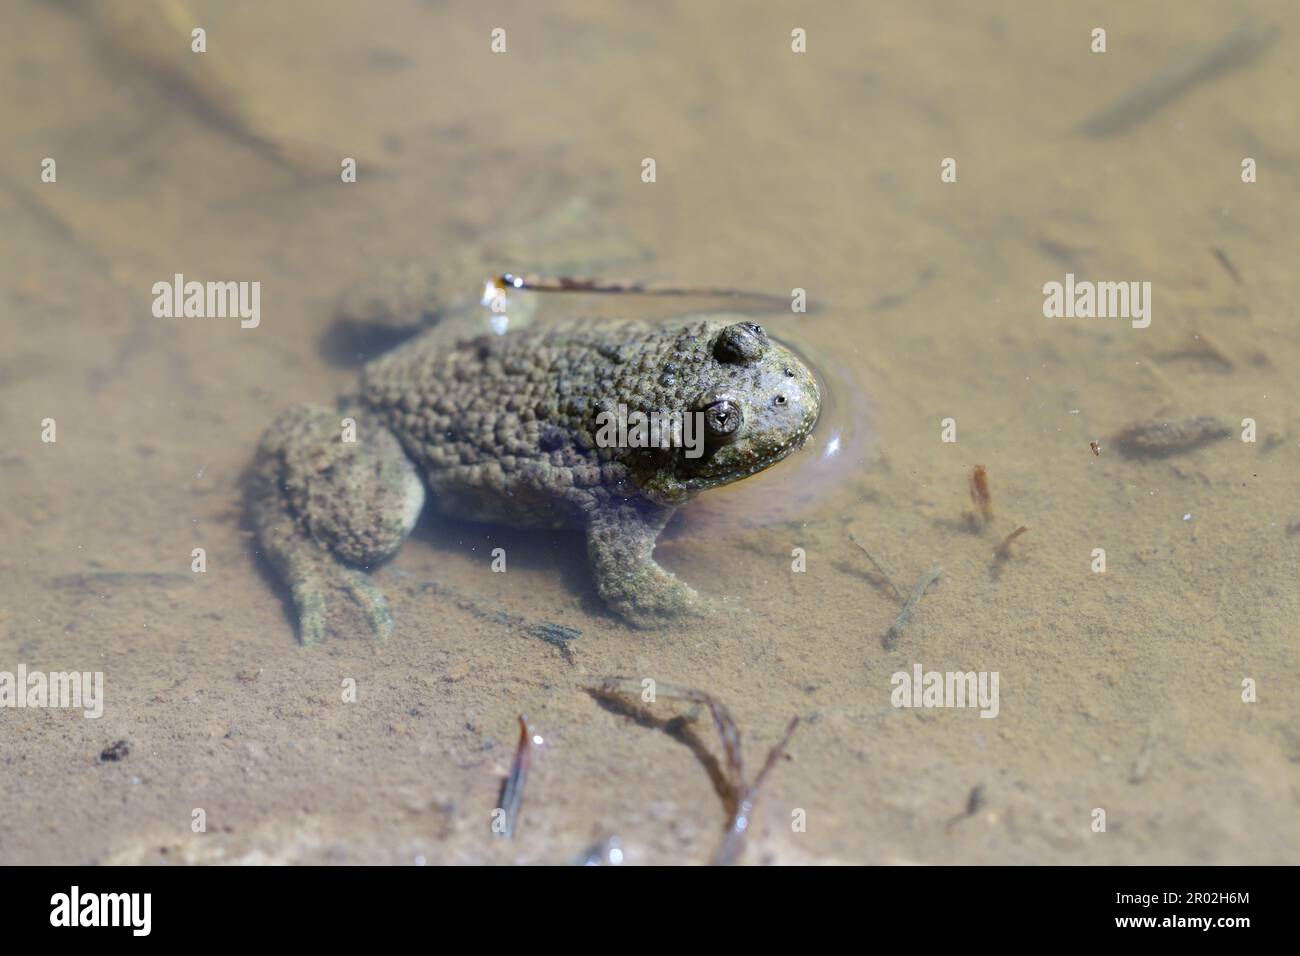 Toad dalle ventre gialle, Bombina variegata. Rare specie di anfibi in pericolo. Foto Stock